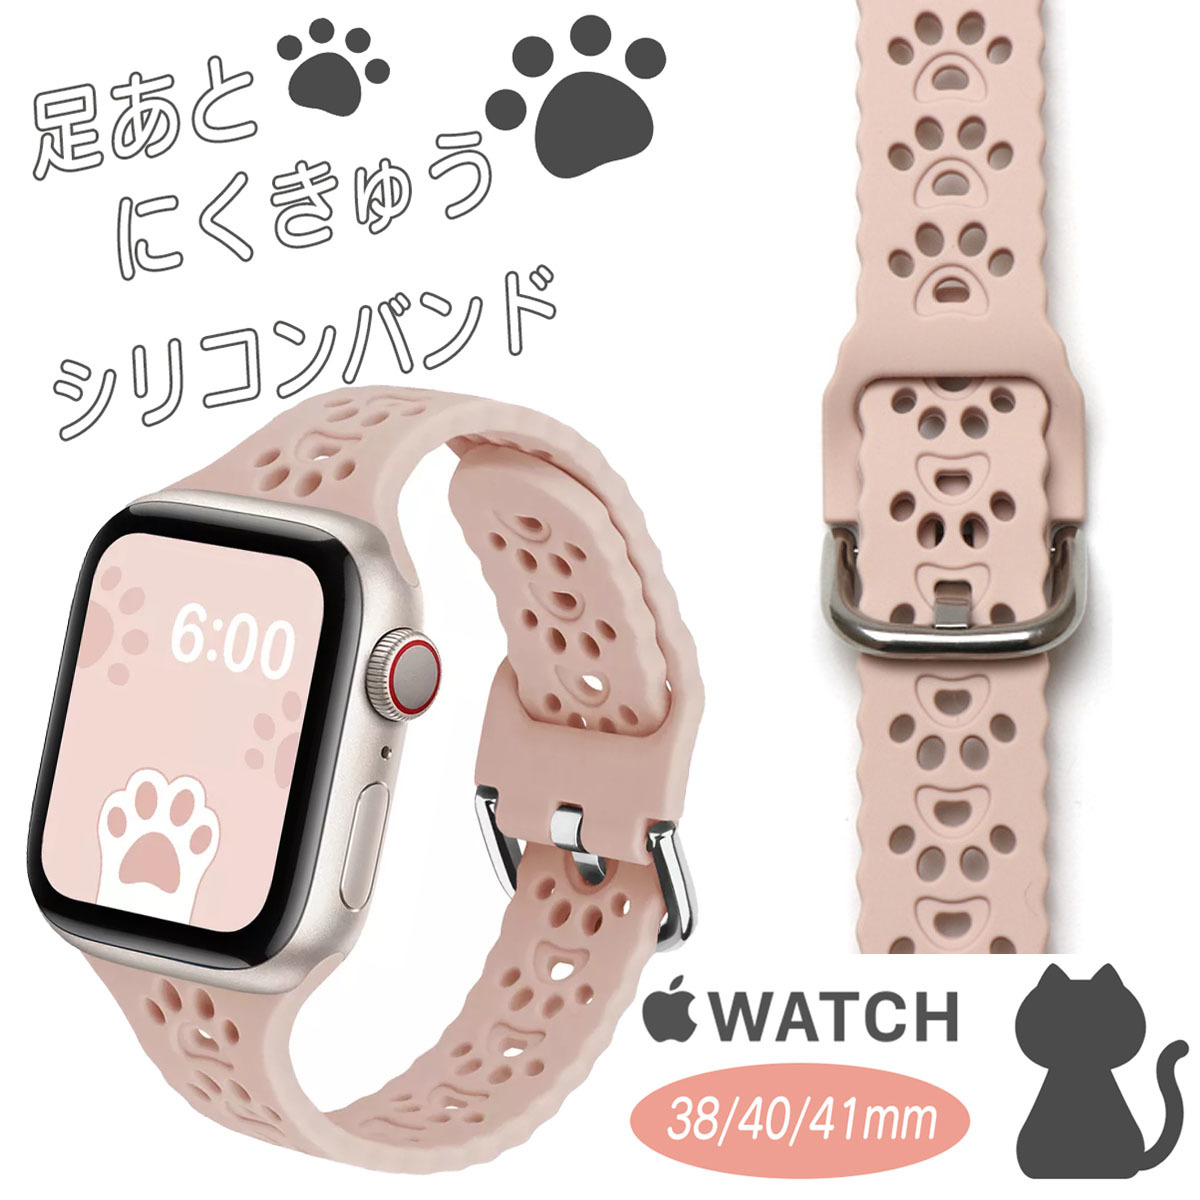 アップルウォッチ Apple Watch ピンクベージュ iwatch シリコンバンド ねこ 猫 犬 足跡 肉球 38mm 40mm 41mm ラバー ベルト ペット ネコ_画像1